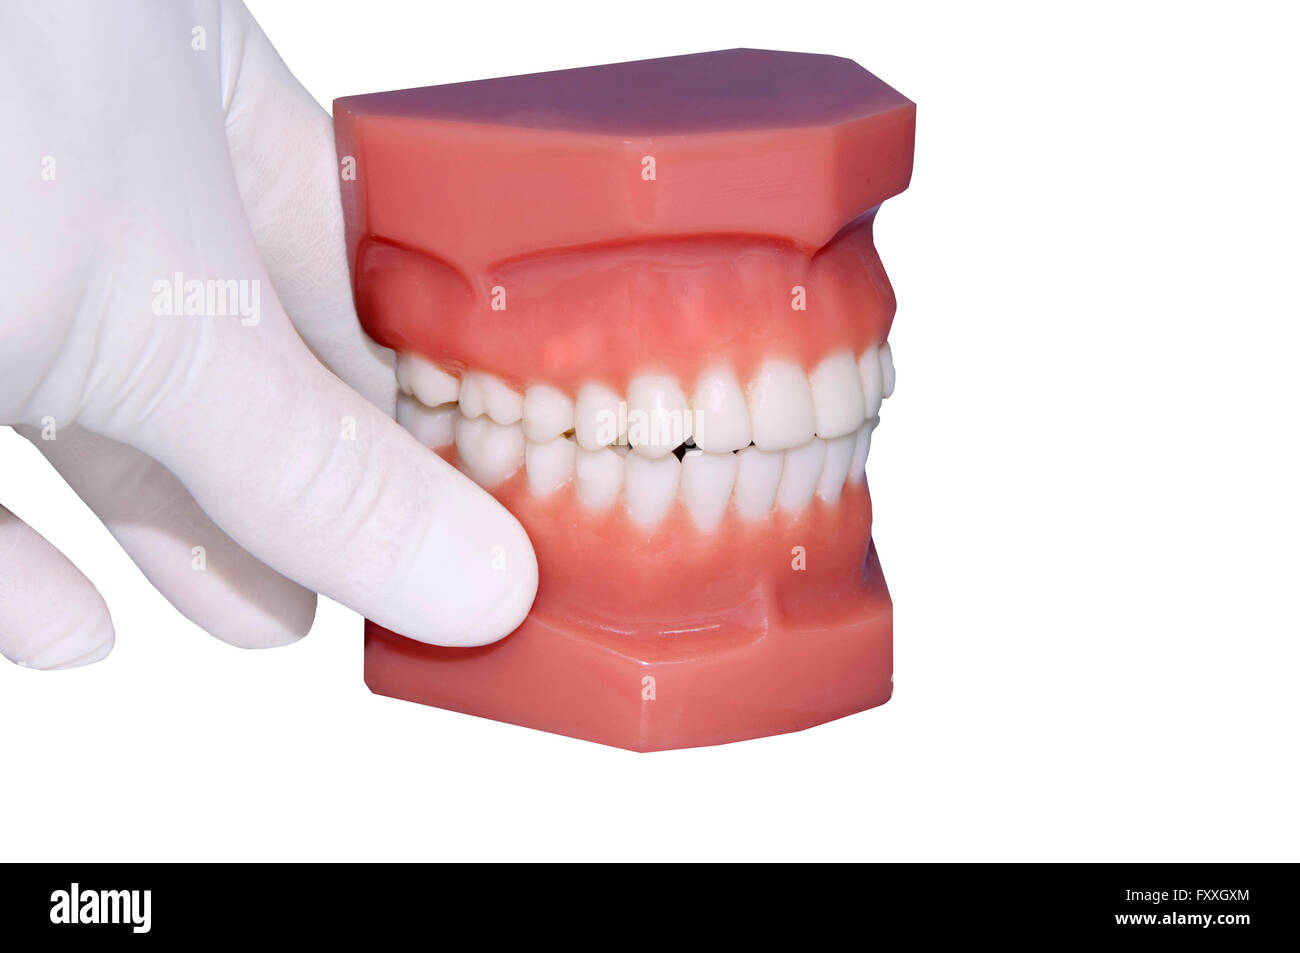 Dentista mano muestran los dientes humanos modelo aislado en blanco Foto de stock